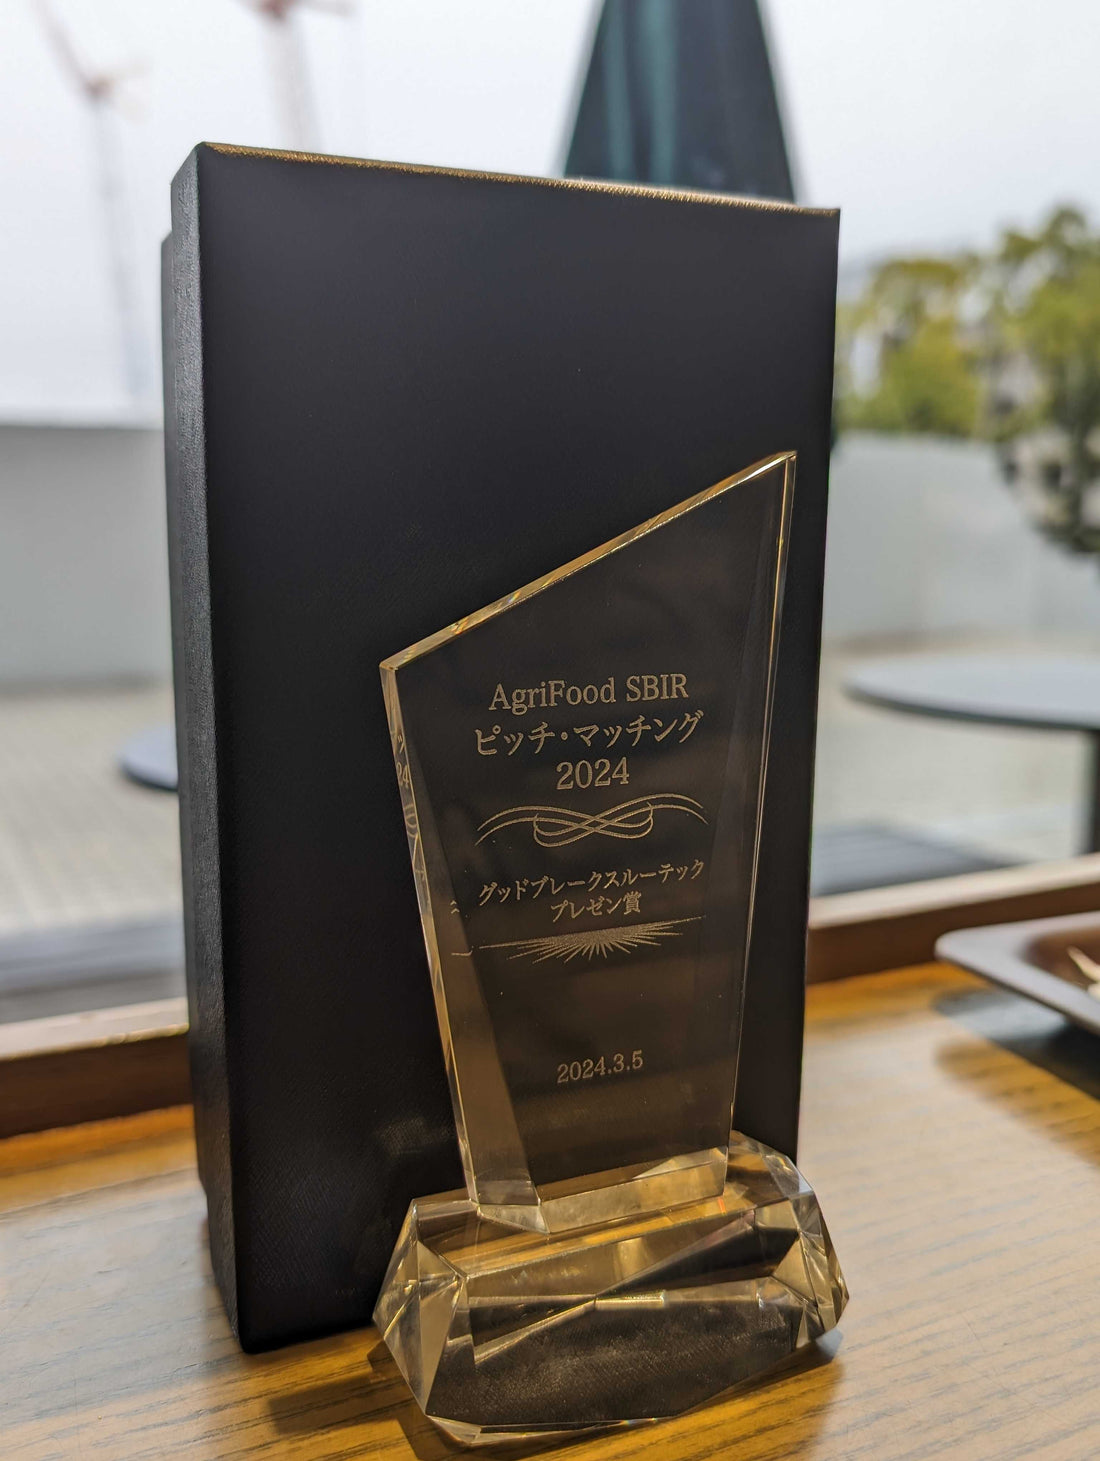 「AgriFood SBIR ピッチ・マッチング2024」において グッドプレークスルーテックプレゼン賞を受賞